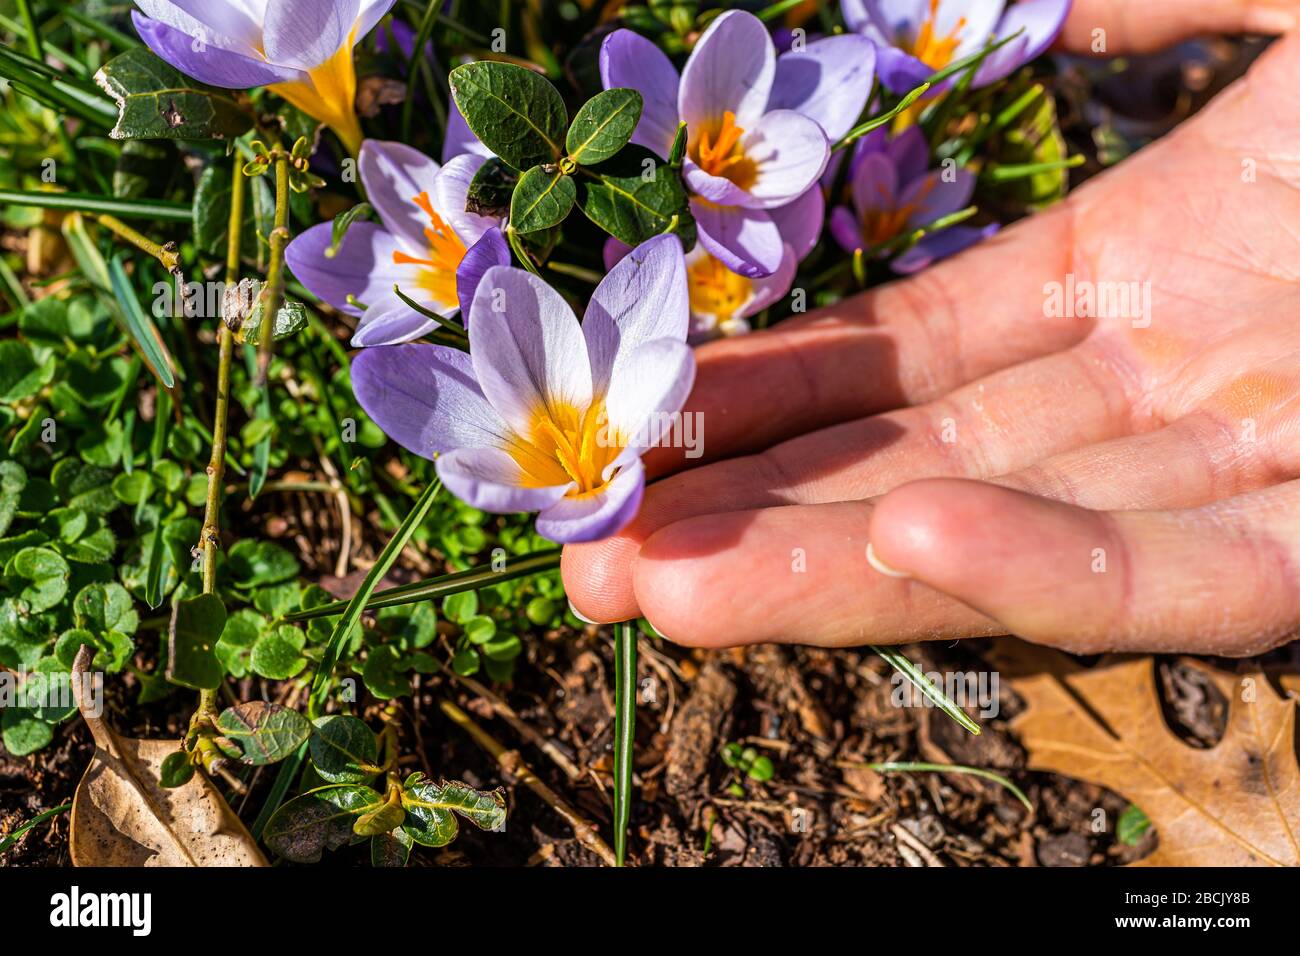 Violett weiße und gelbe Krokusblüten Blumen, die im Frühling auf gemahlenem Gras in Virginia blühen, mit Makro-Nahaufnahme von Hand, die Blüte berührt Stockfoto